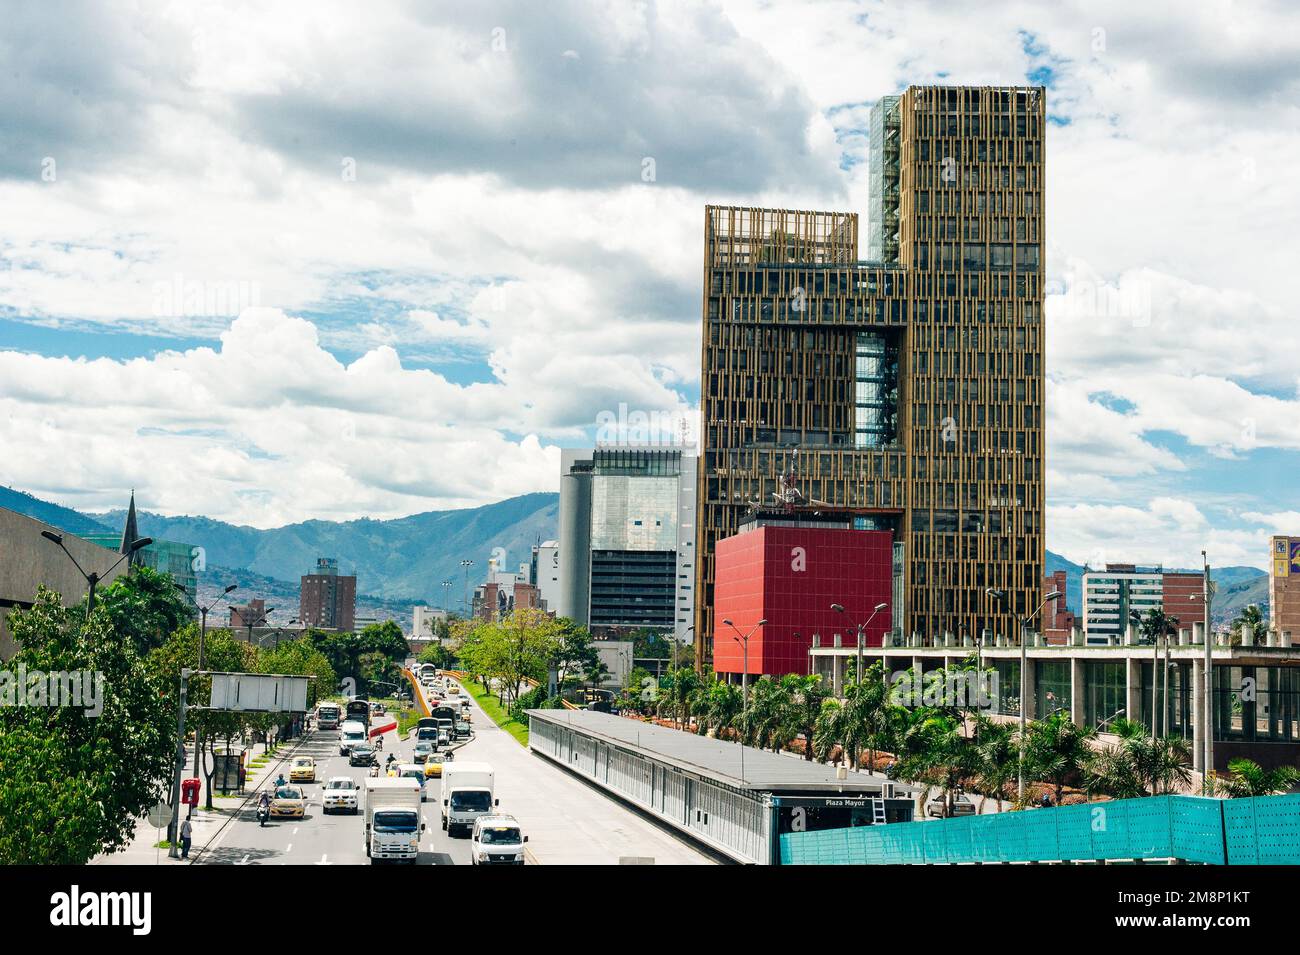 Le centre-ville de Medellin, la deuxième plus grande ville de Colombie - décembre 2022. Photo de haute qualité Banque D'Images